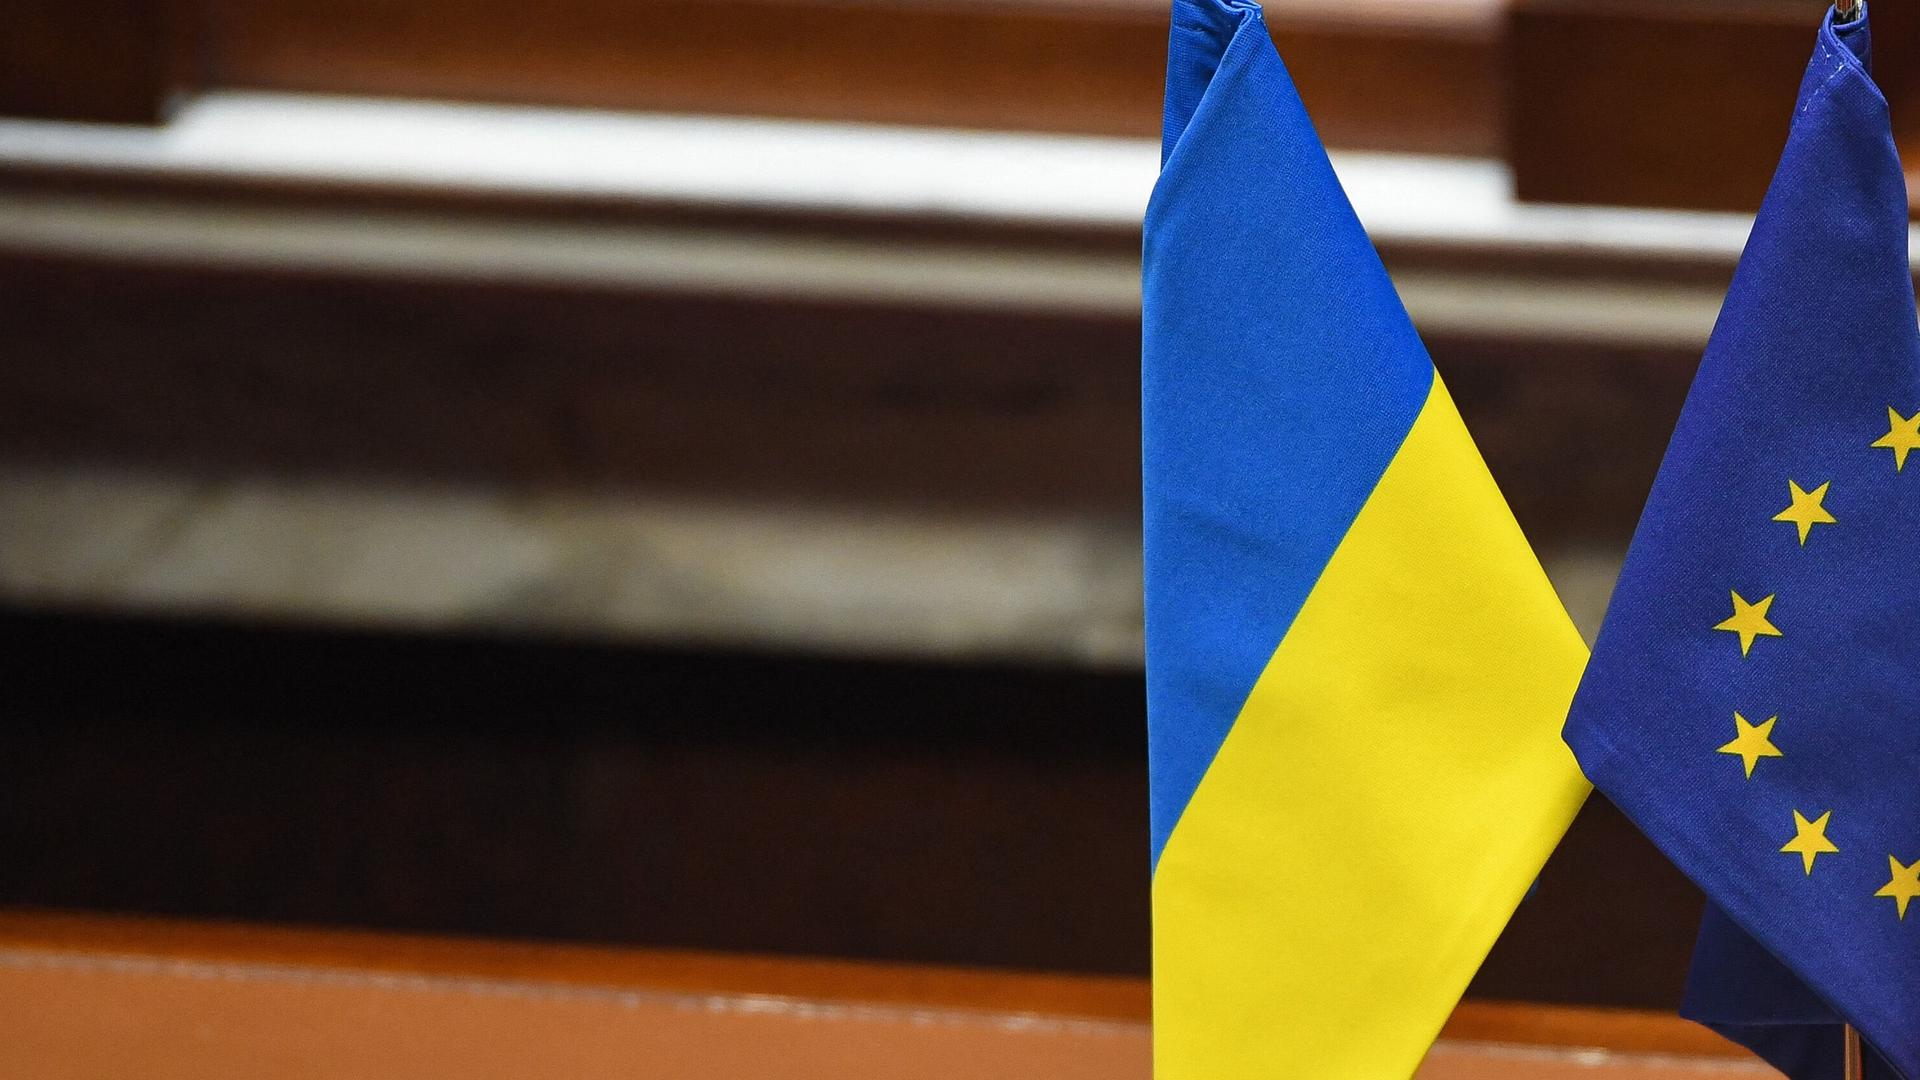 Flaggen der Ukraine und der EU stehen im Miniaturformat auf einem Schreibtisch